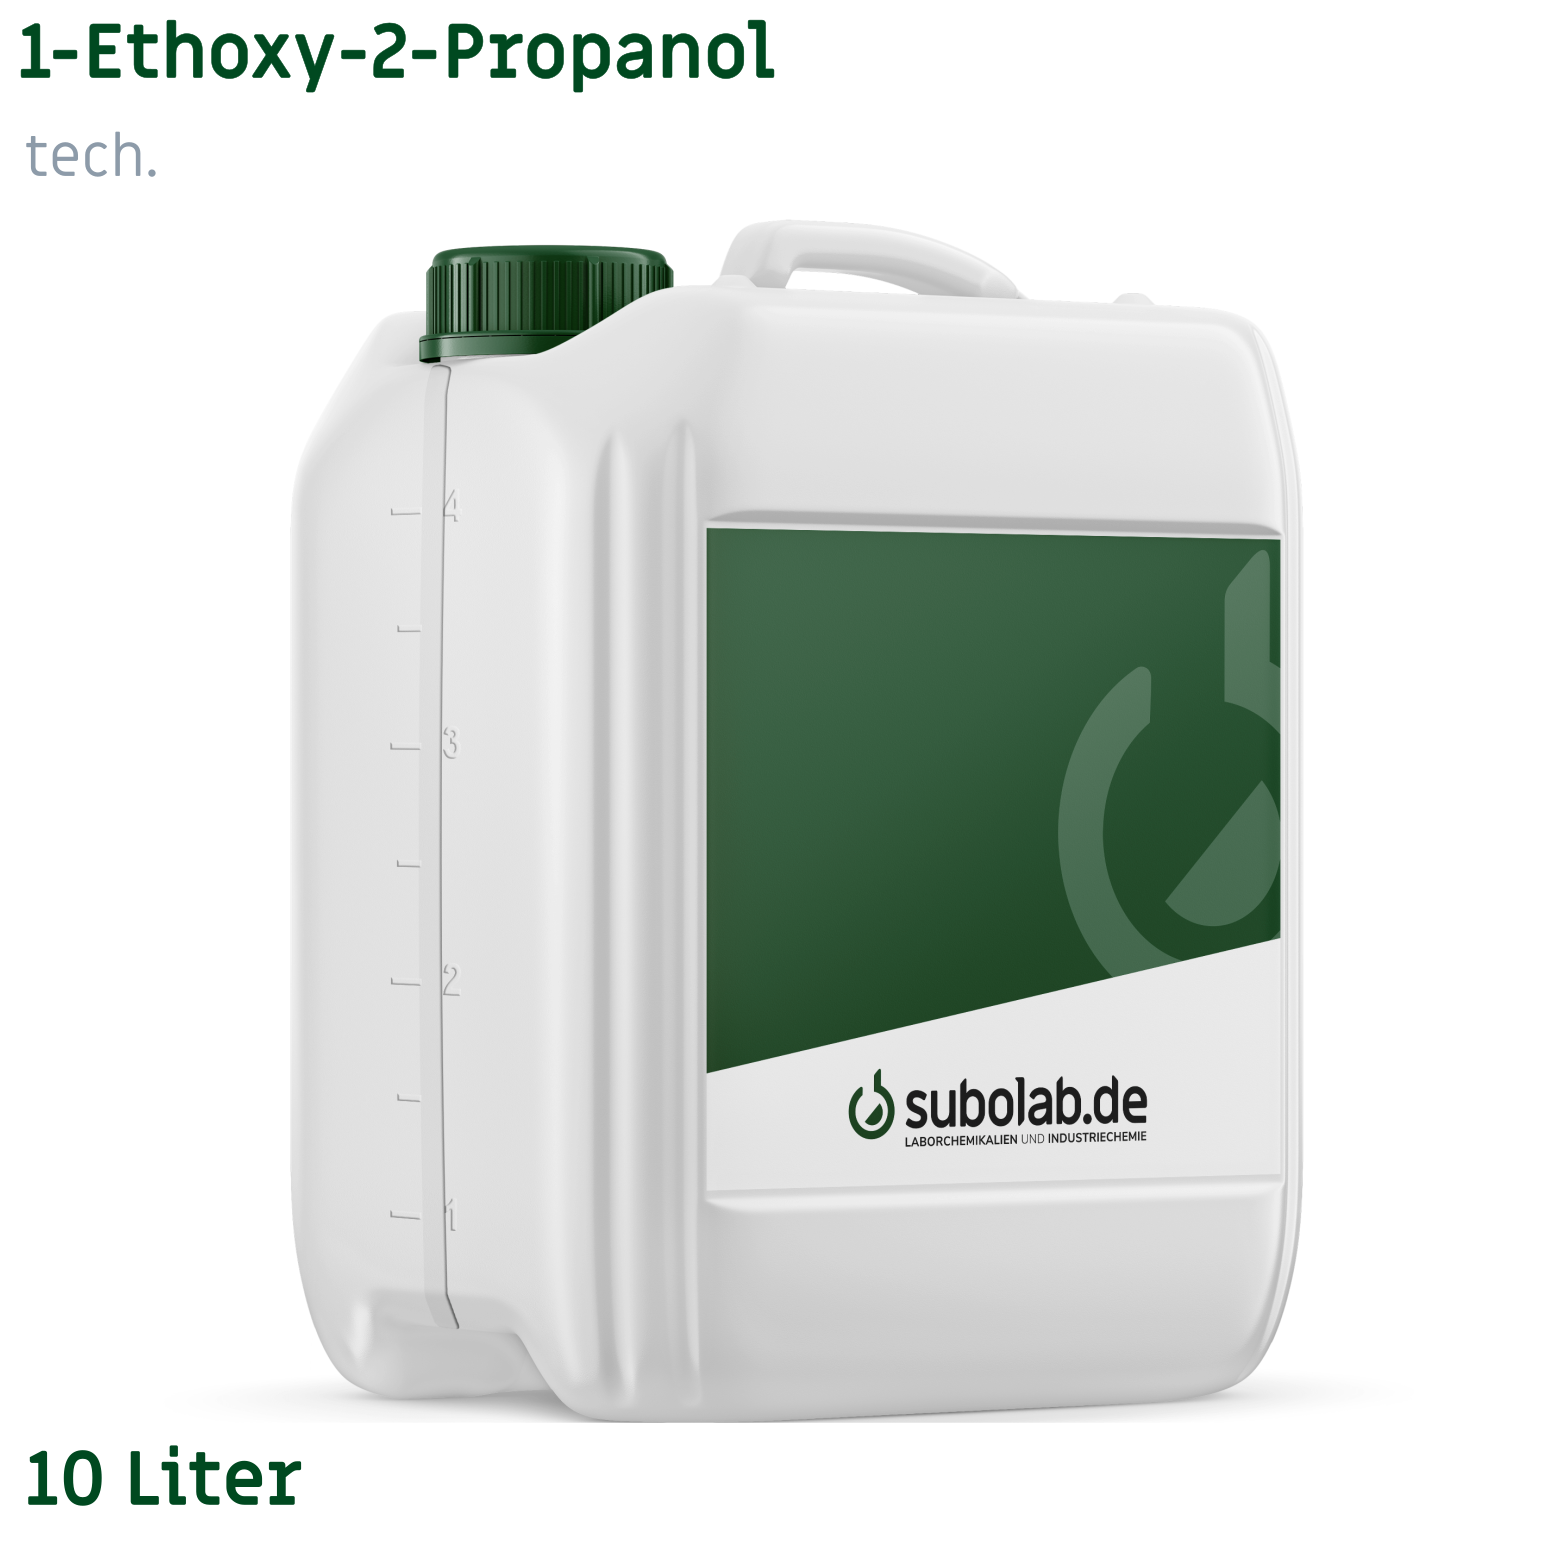 Bild von 1-Ethoxy-2-Propanol tech. (10 Liter)